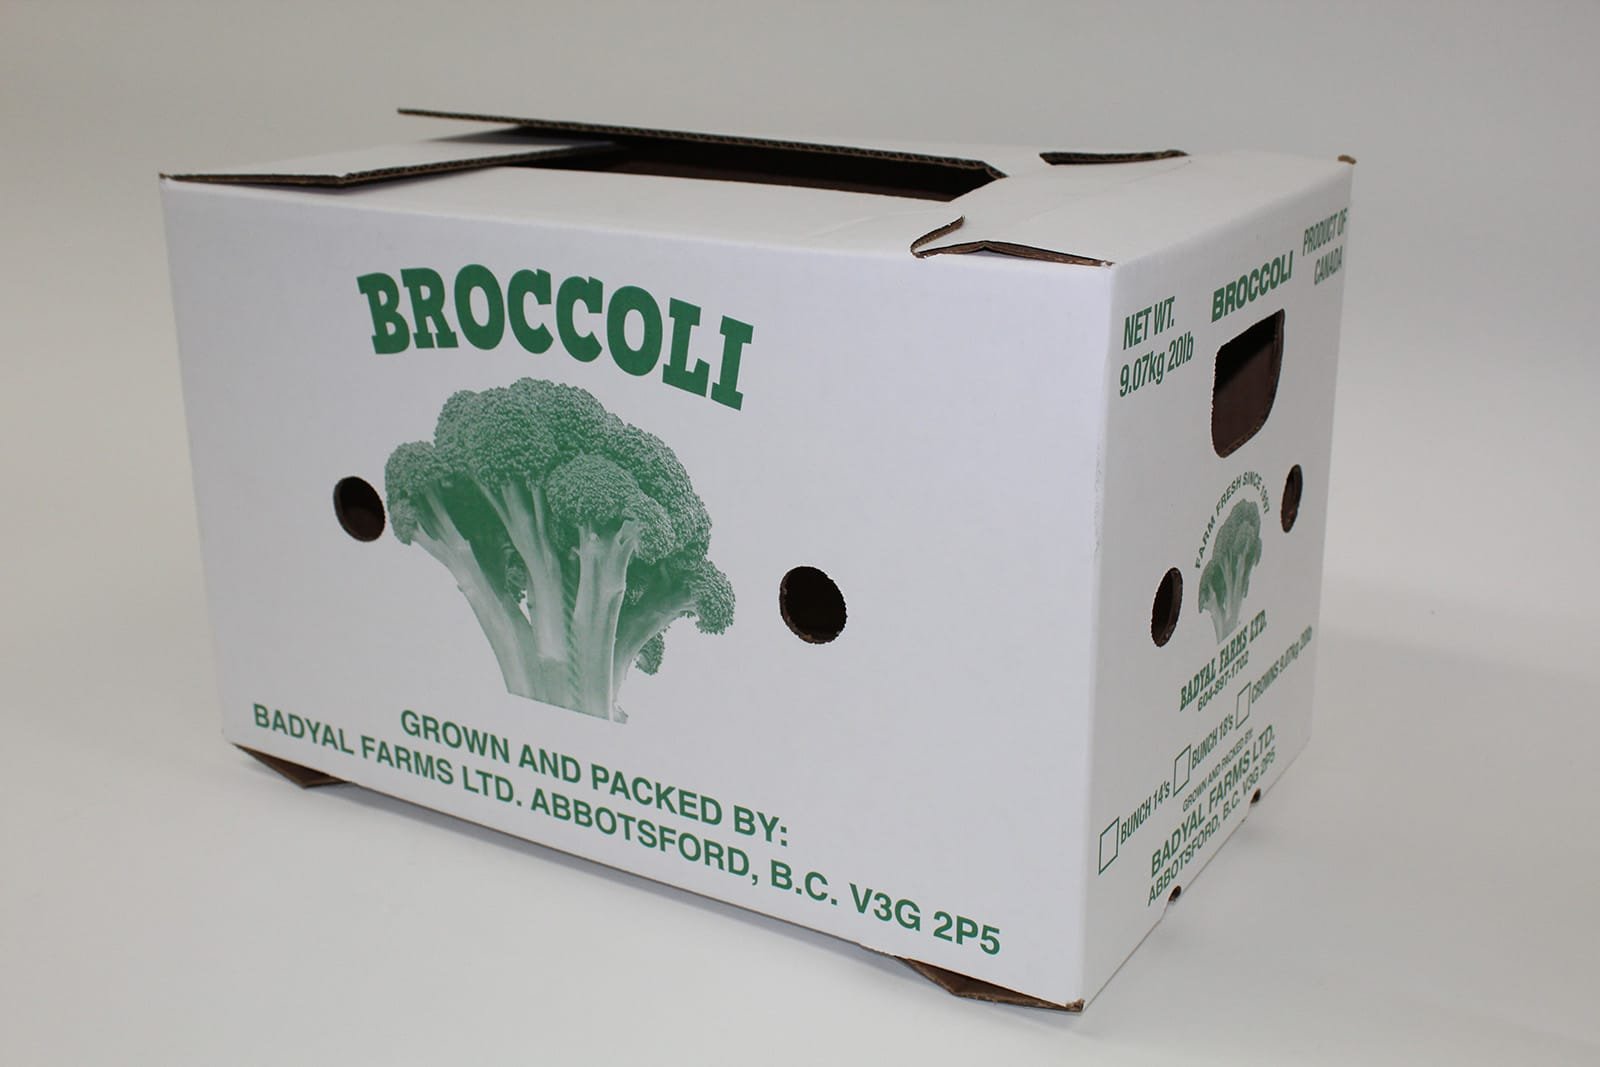 Broccoli - Badyal Farms